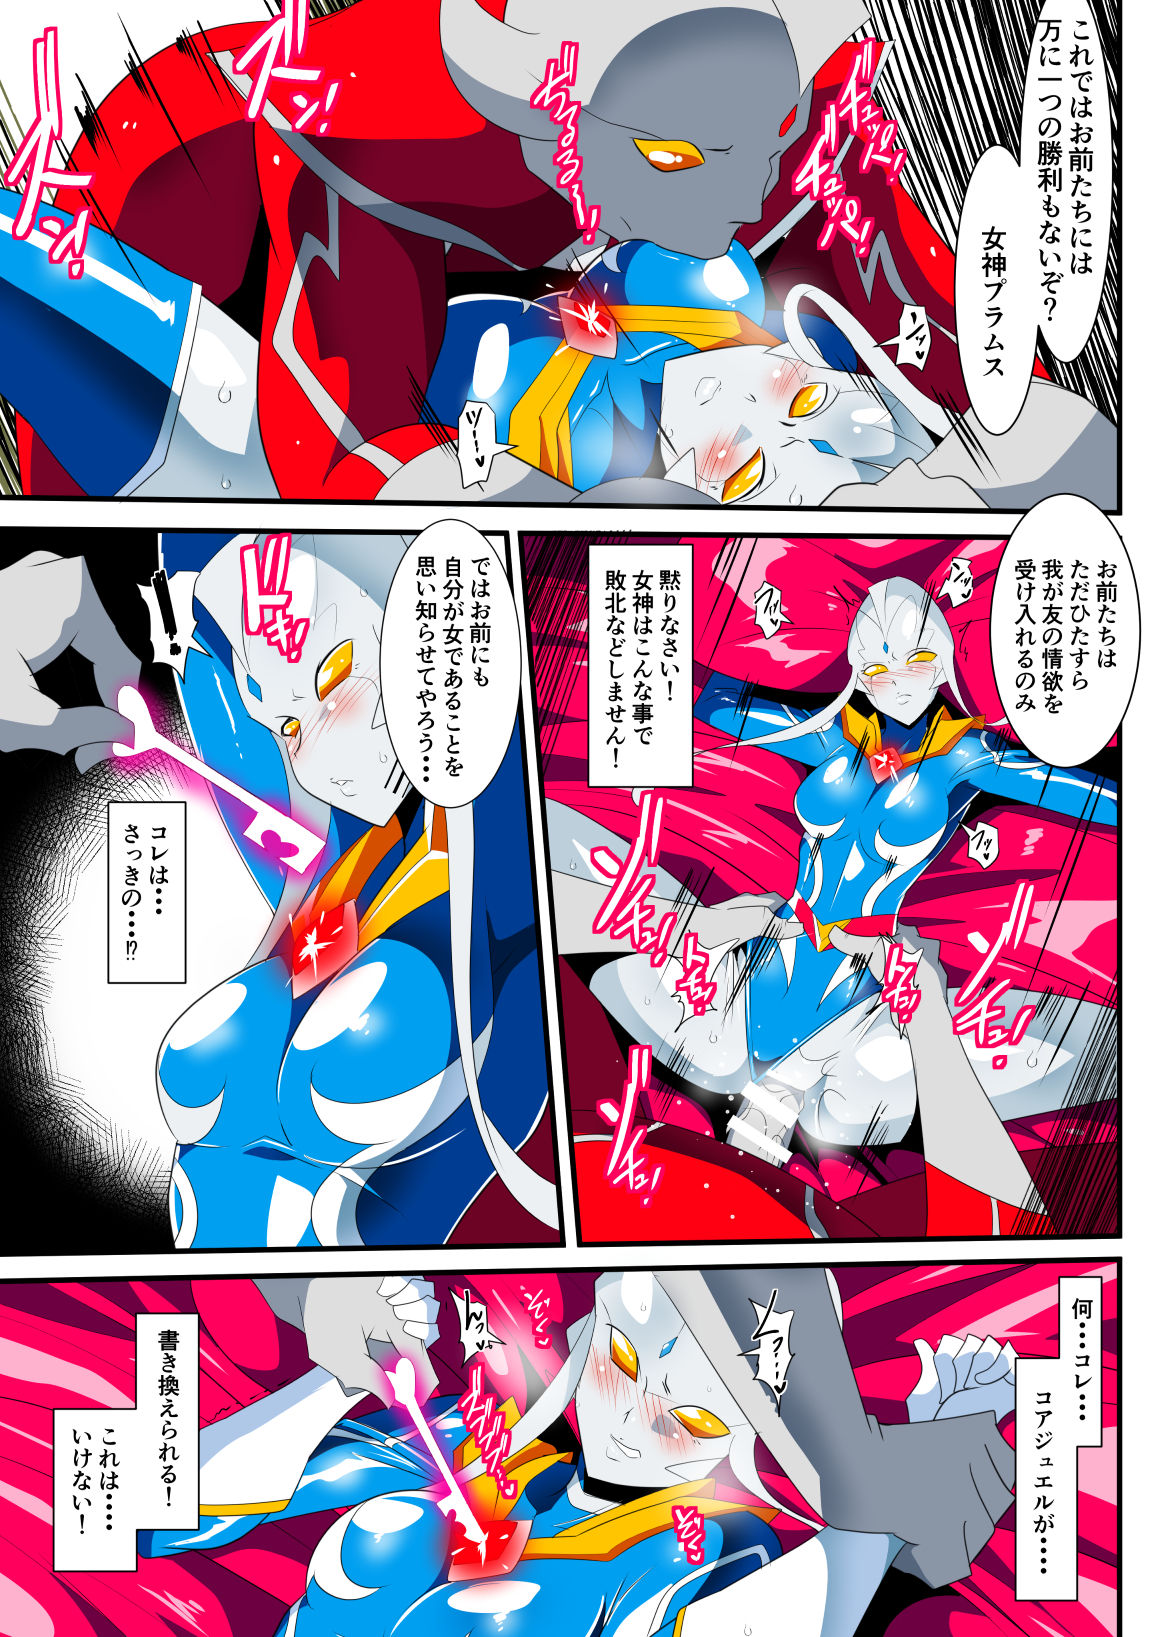 [Warabimochi] Ginga no Megami Netise IX (Ultraman) page 11 full